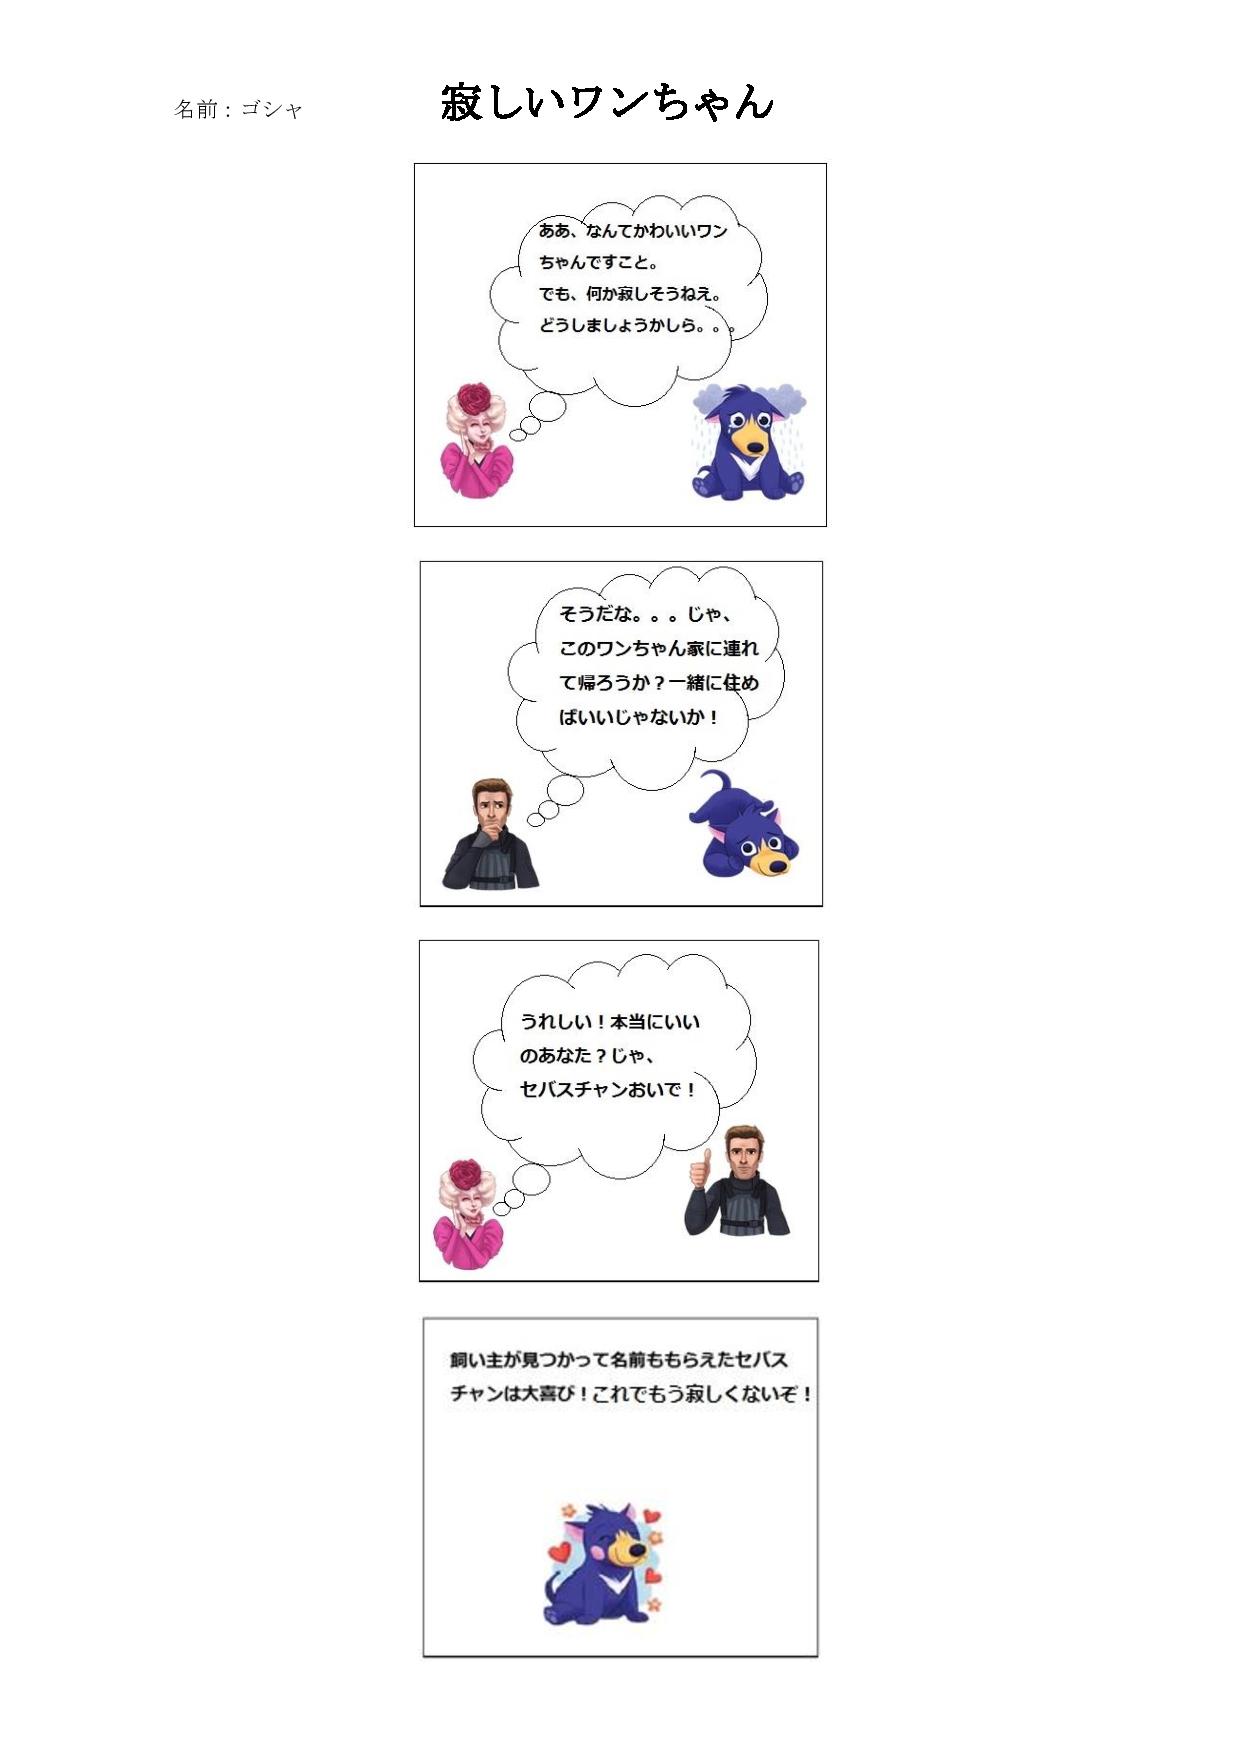 ４コマ漫画-yonkoma-manga-page-001